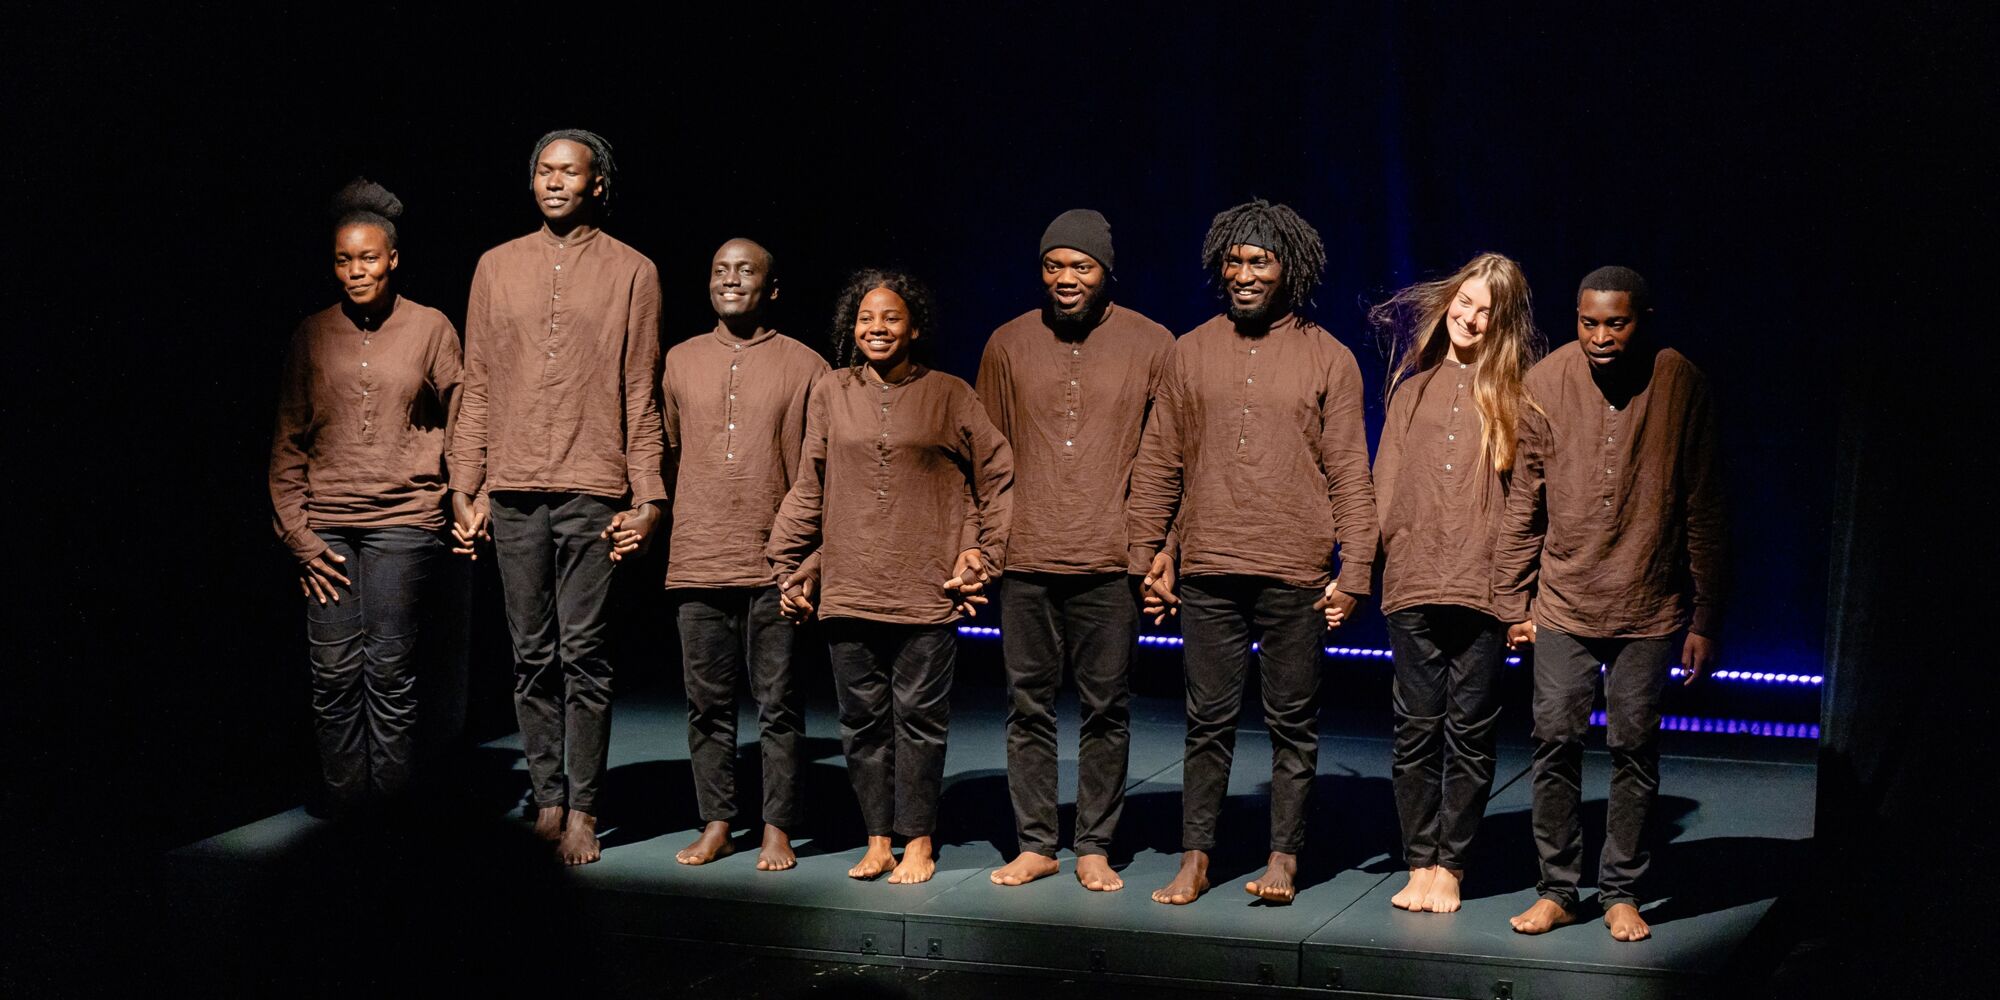 Hier sieht man die acht Darstellenden der Produktion "Balance" beim Schlussapplaus. Sie halten die Hände und tragen alle das gleiche Kostüm bestehend aus einer schwarzen Hose und einem braunen lockeren Hemd.